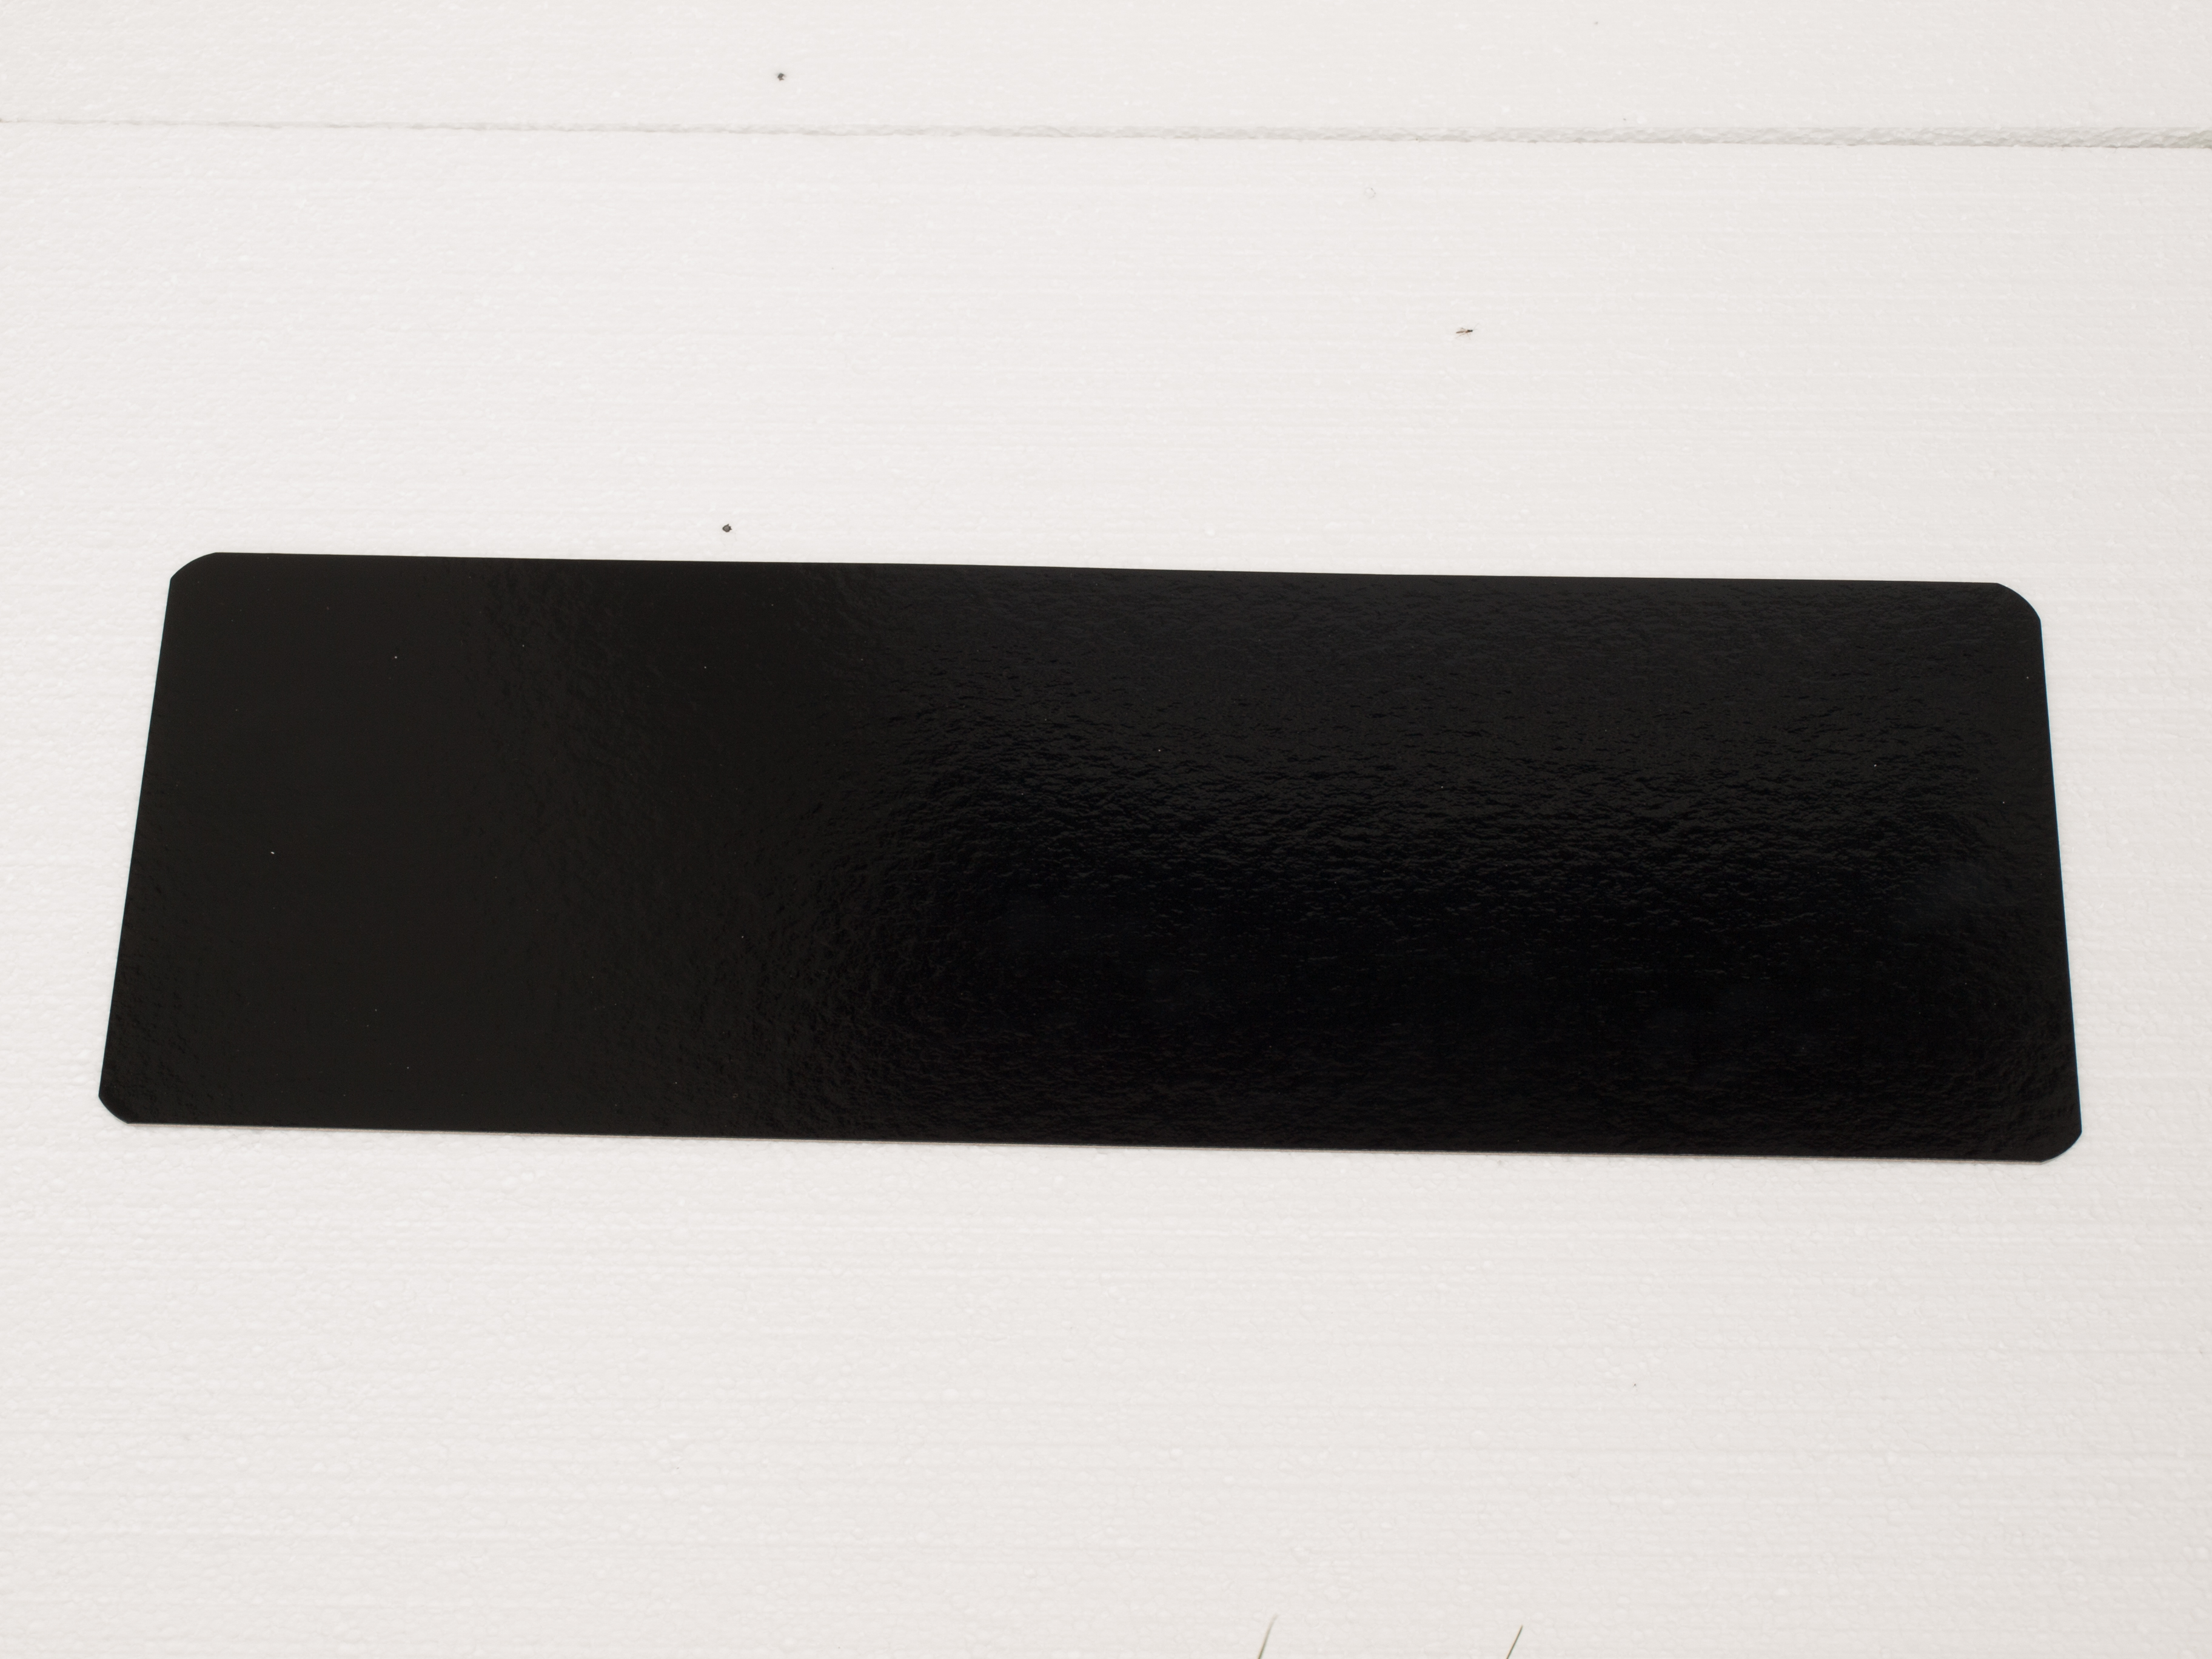 Einlegeboden / Lachsbretter für Vakuumbeutel, schwarz/schwarz 185 x 530 mm, SPARSET